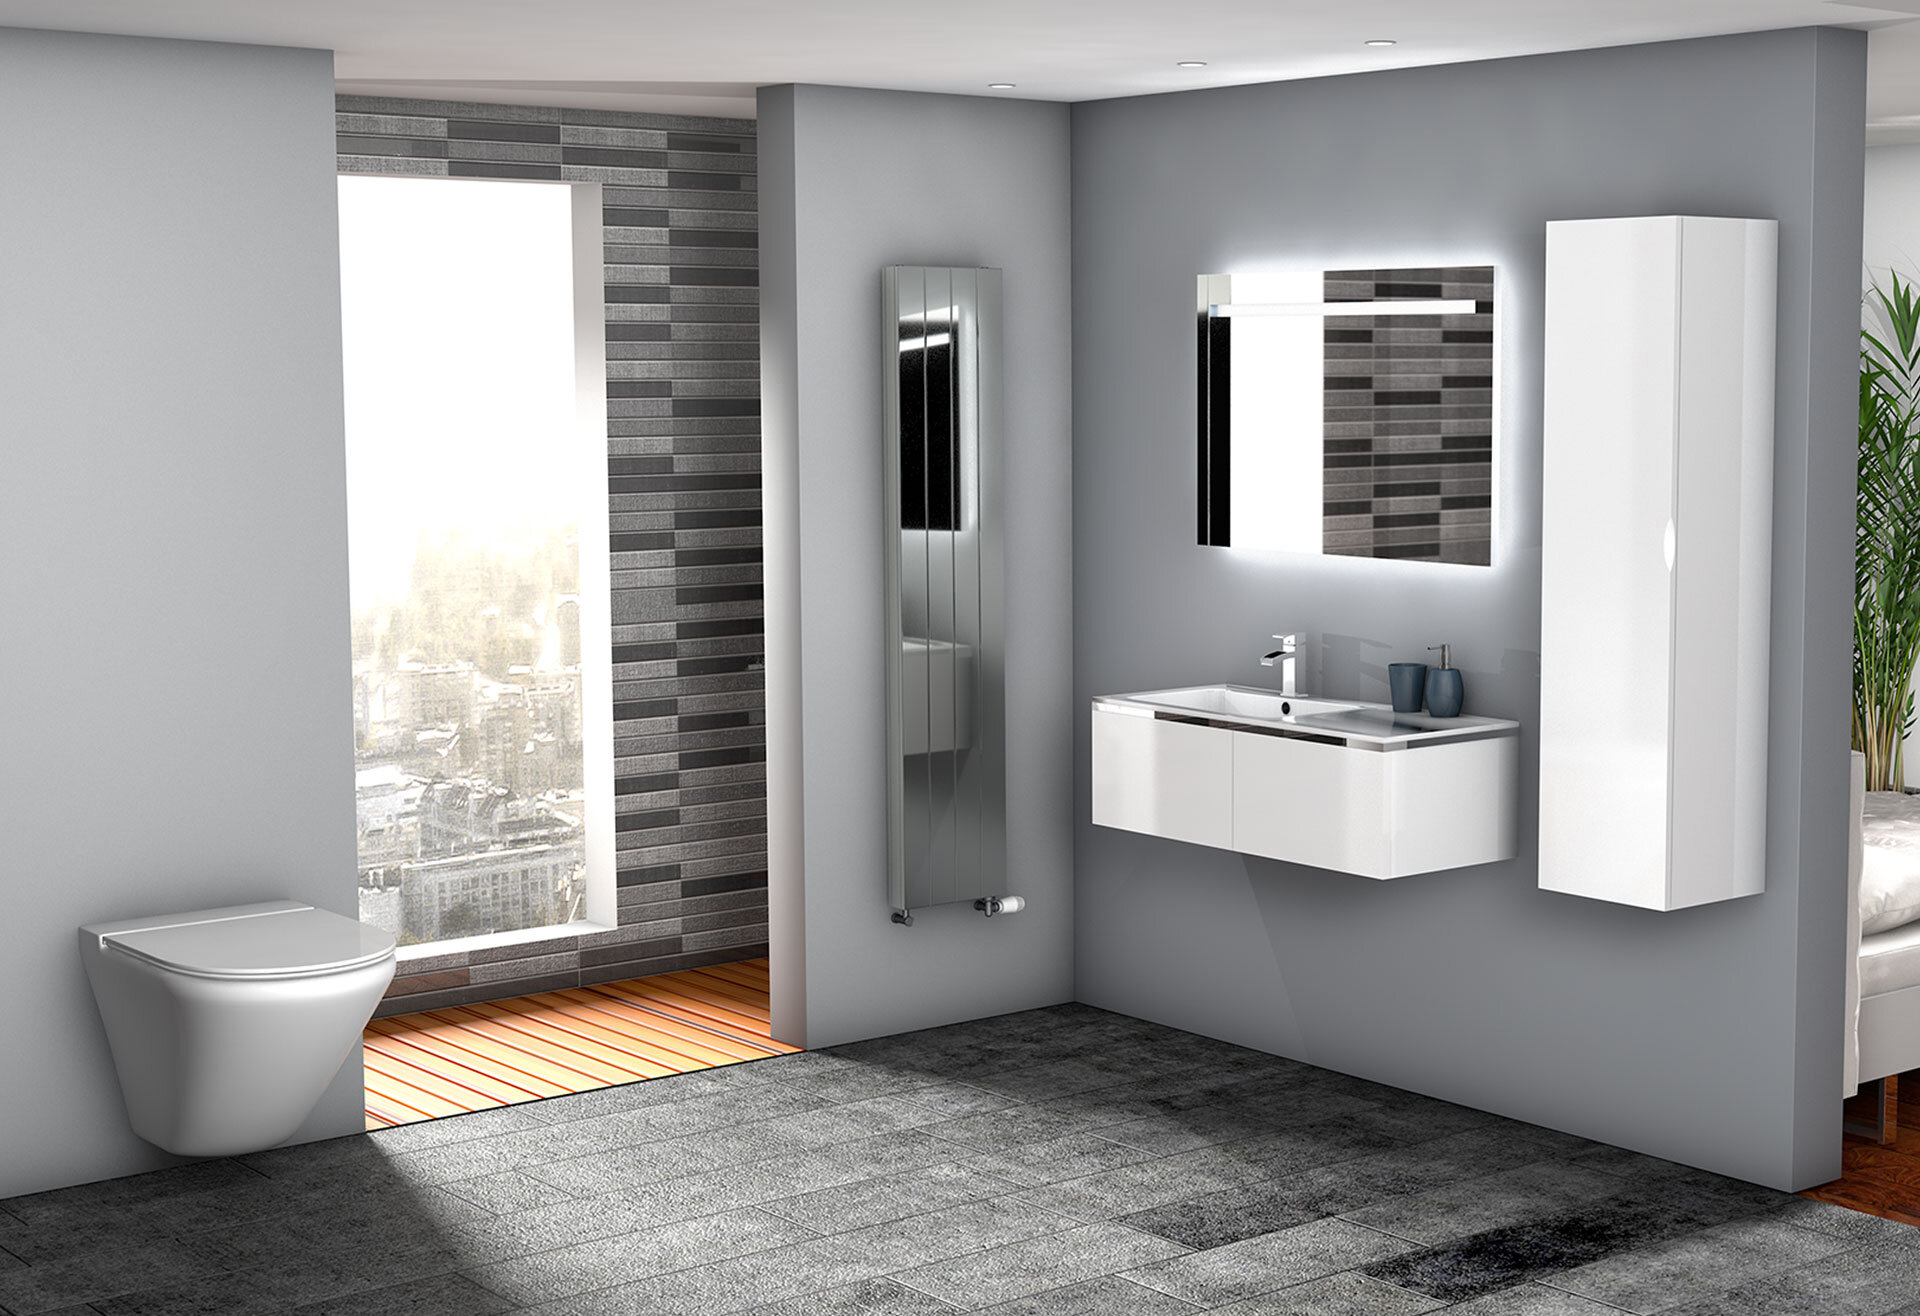 WK360-CGI-Bathroom-Urban-modern-grey-bathroom-with-wall-hung-toilet.jpg